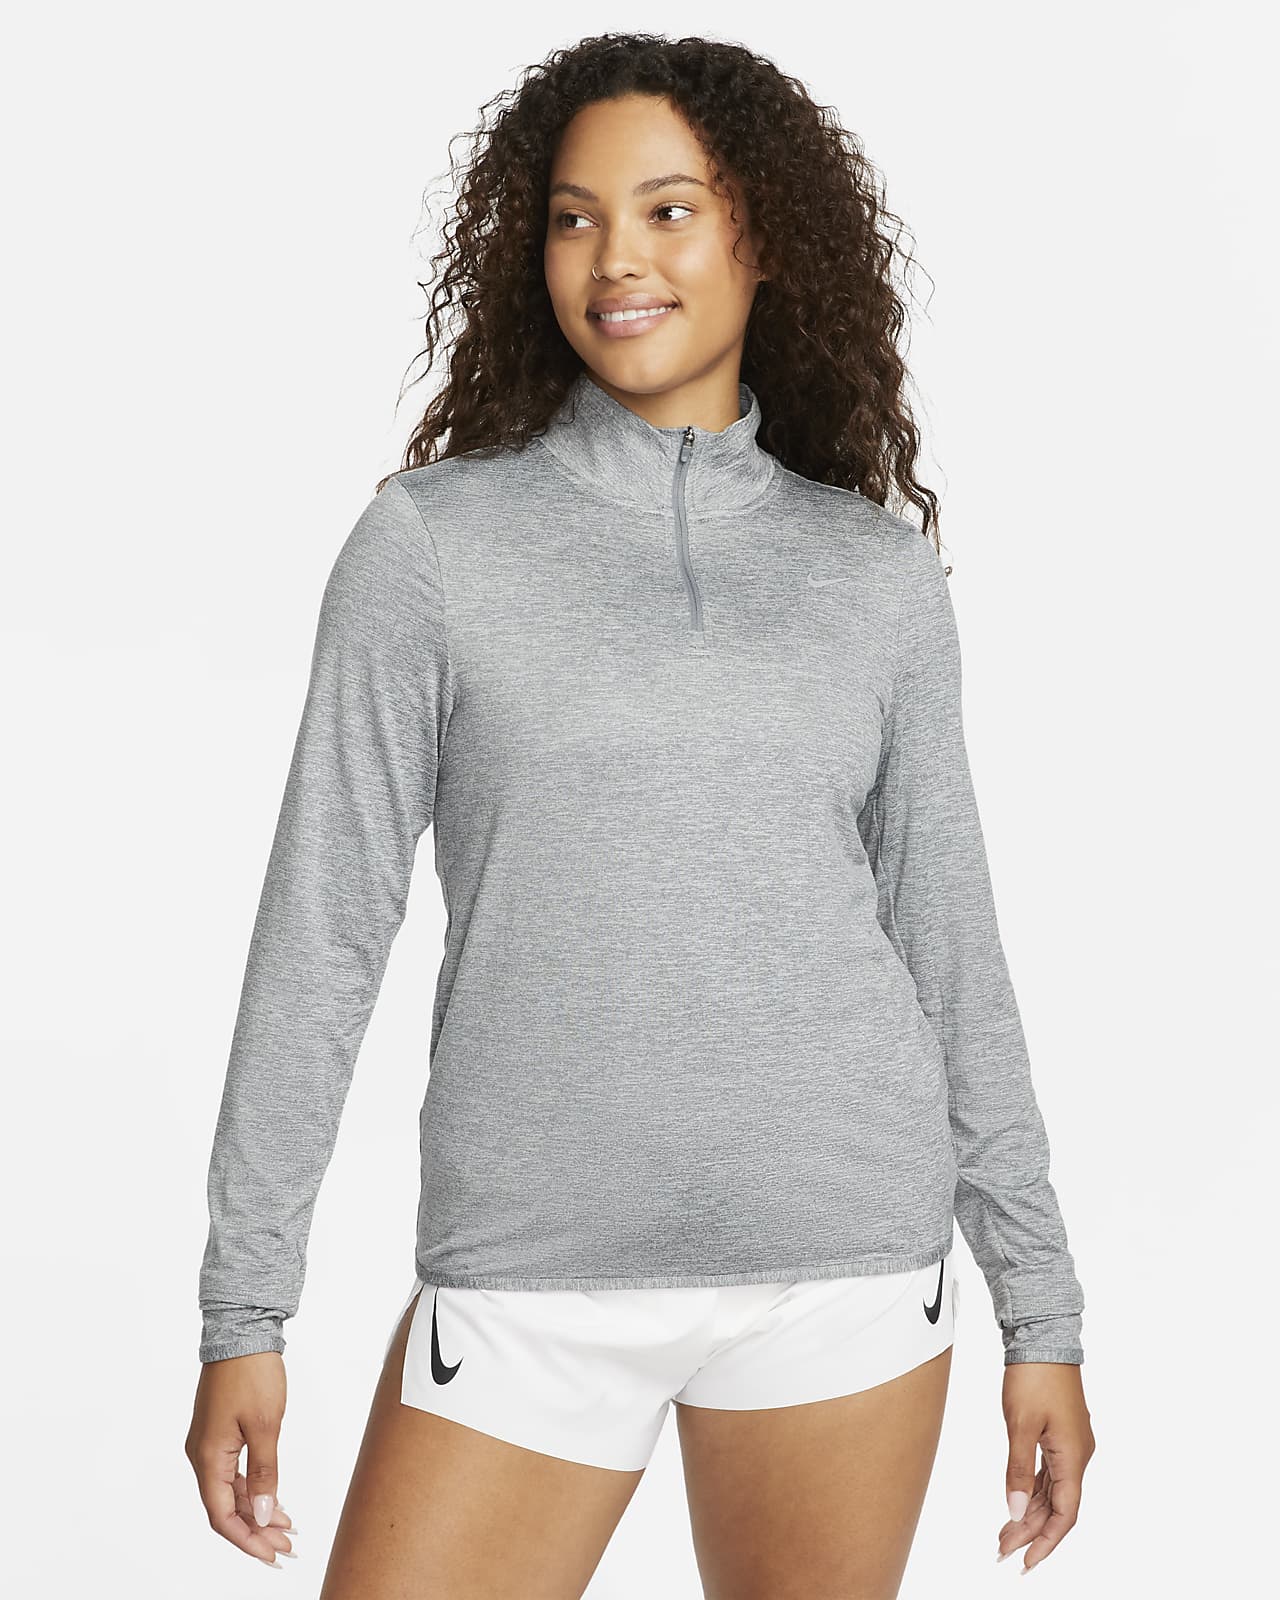 Γυναικεία μπλούζα για τρέξιμο με προστασία UV και φερμουάρ στο 1/4 του μήκους Nike Swift